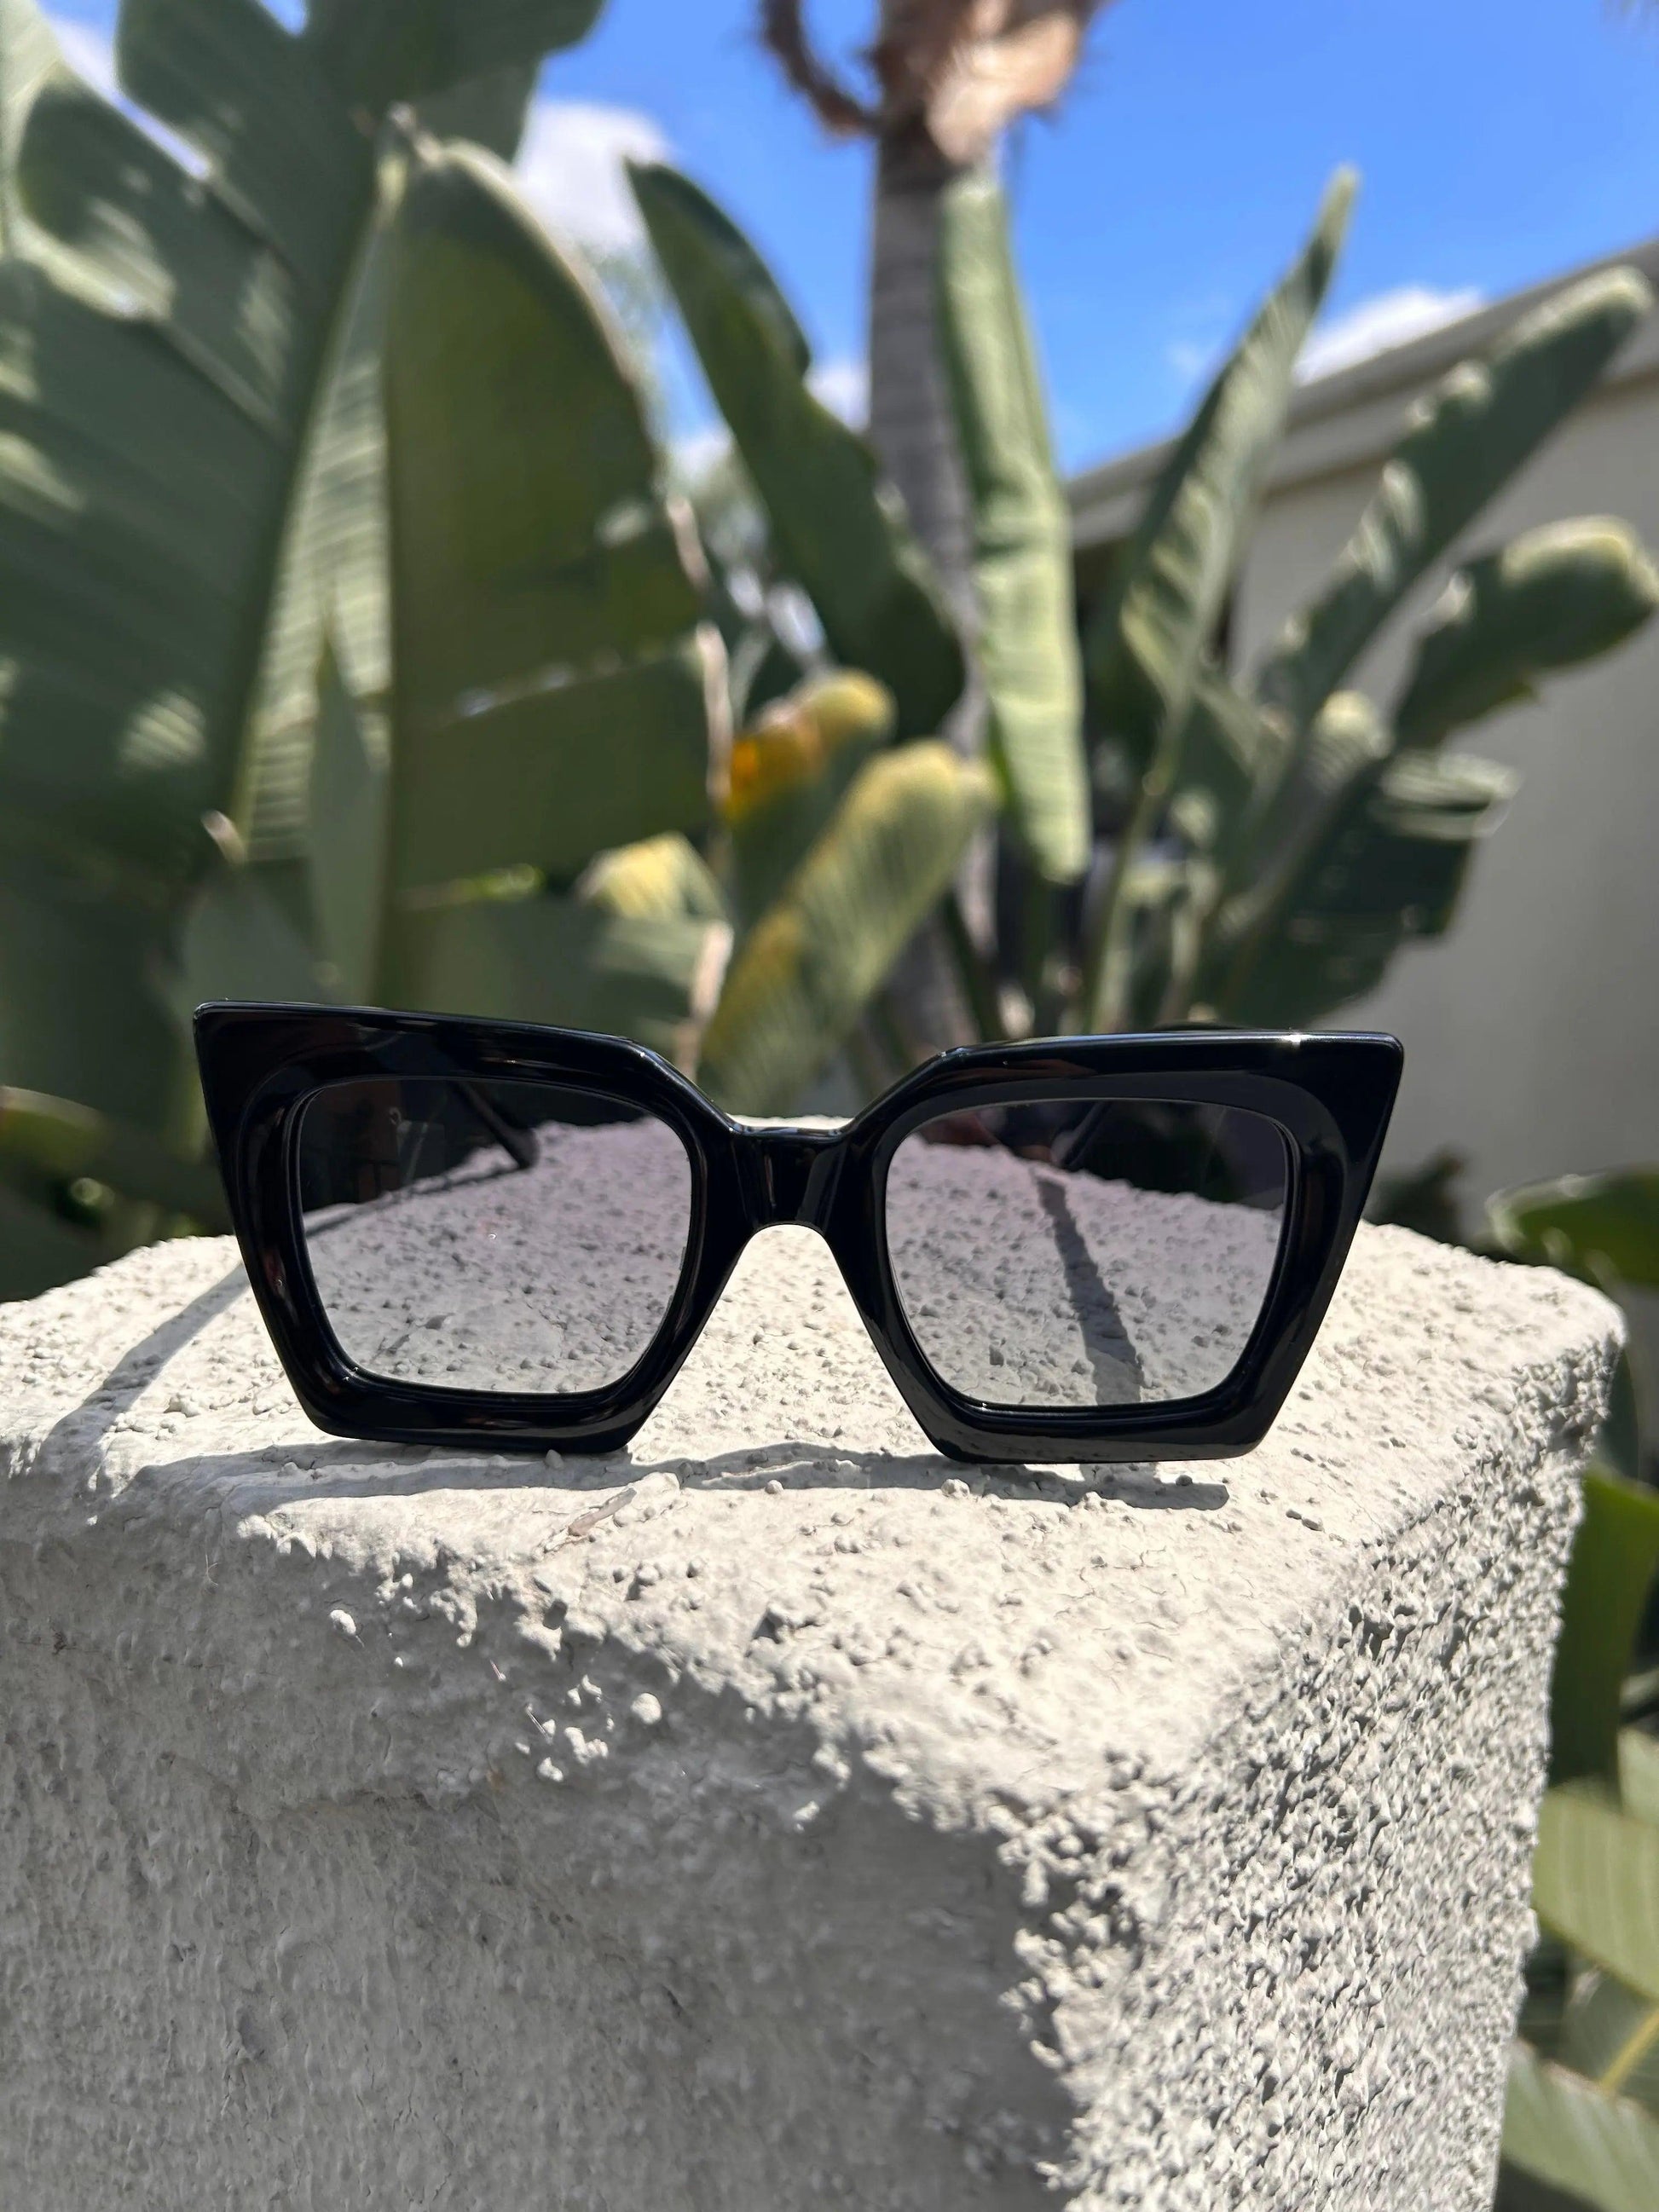 Las mejores gafas de sol oversized: Estilo y moda sin límites - RM